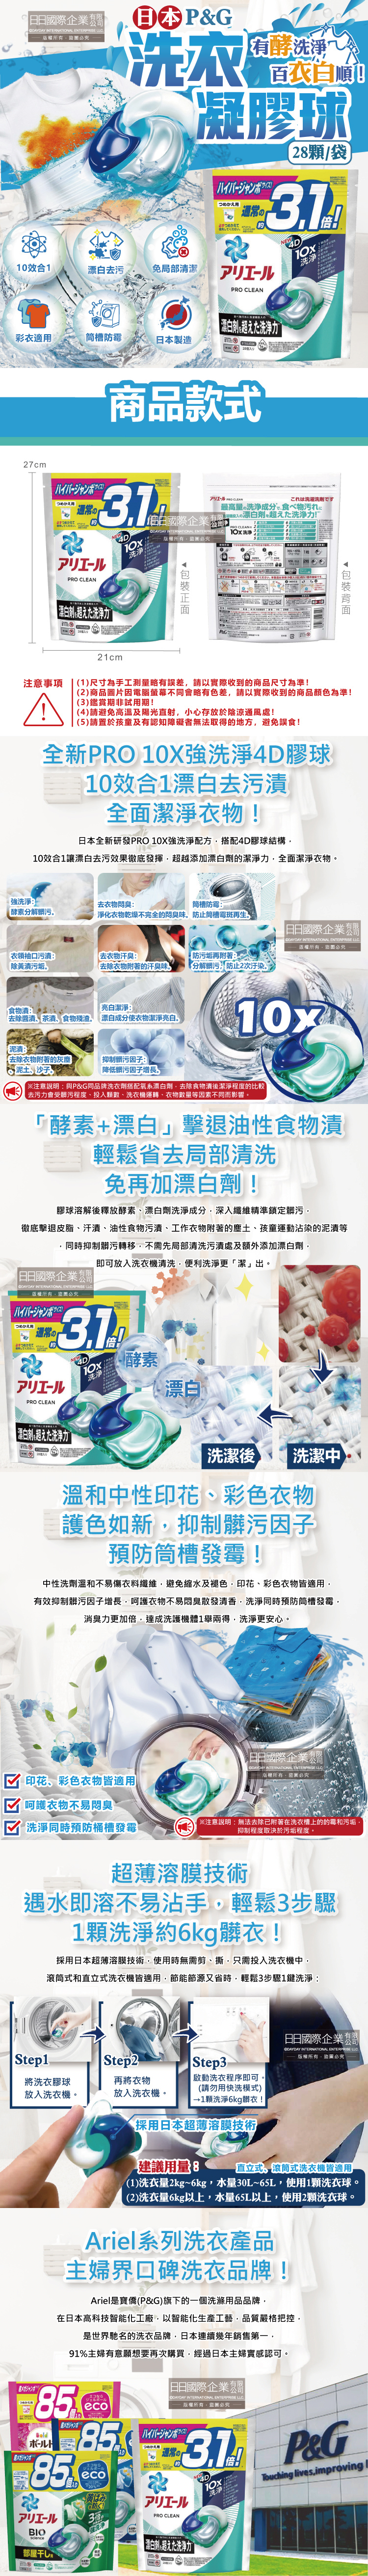 (清潔-衣物)日本P&G-Ariel-PRO-10X
漂白去污洗衣球28顆袋裝介紹圖